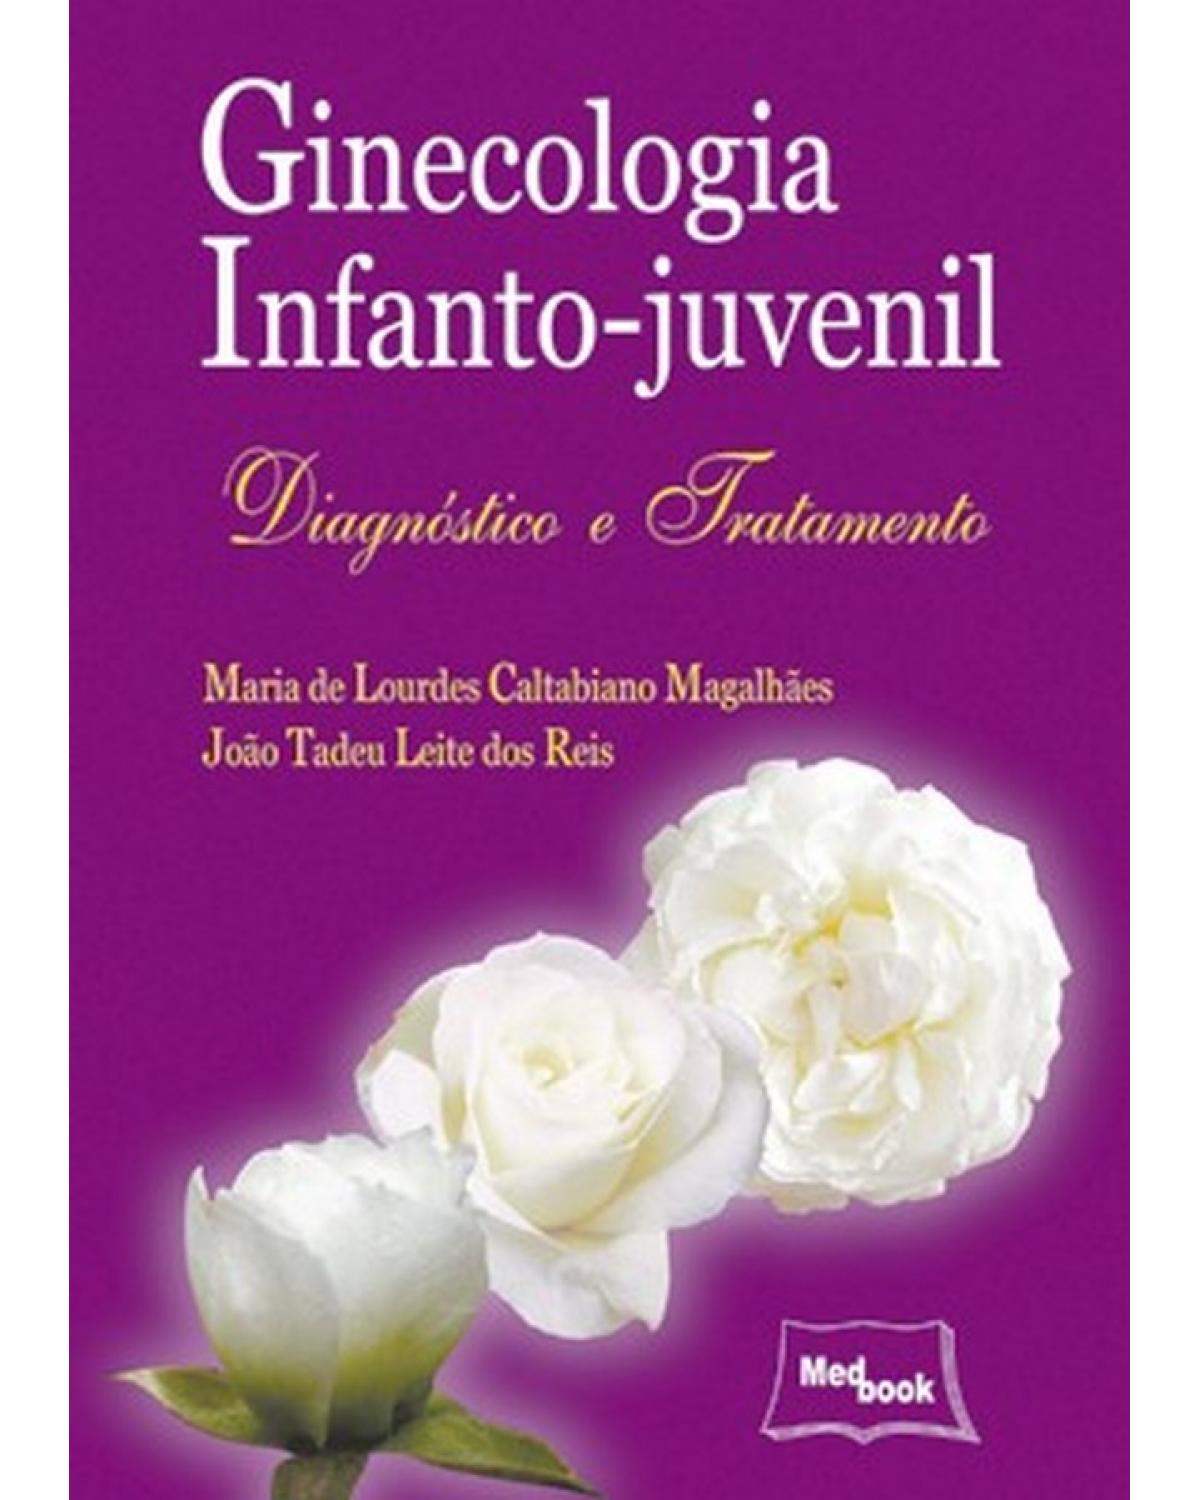 Ginecologia infanto-juvenil - diagnóstico e tratamento - 1ª Edição | 2007